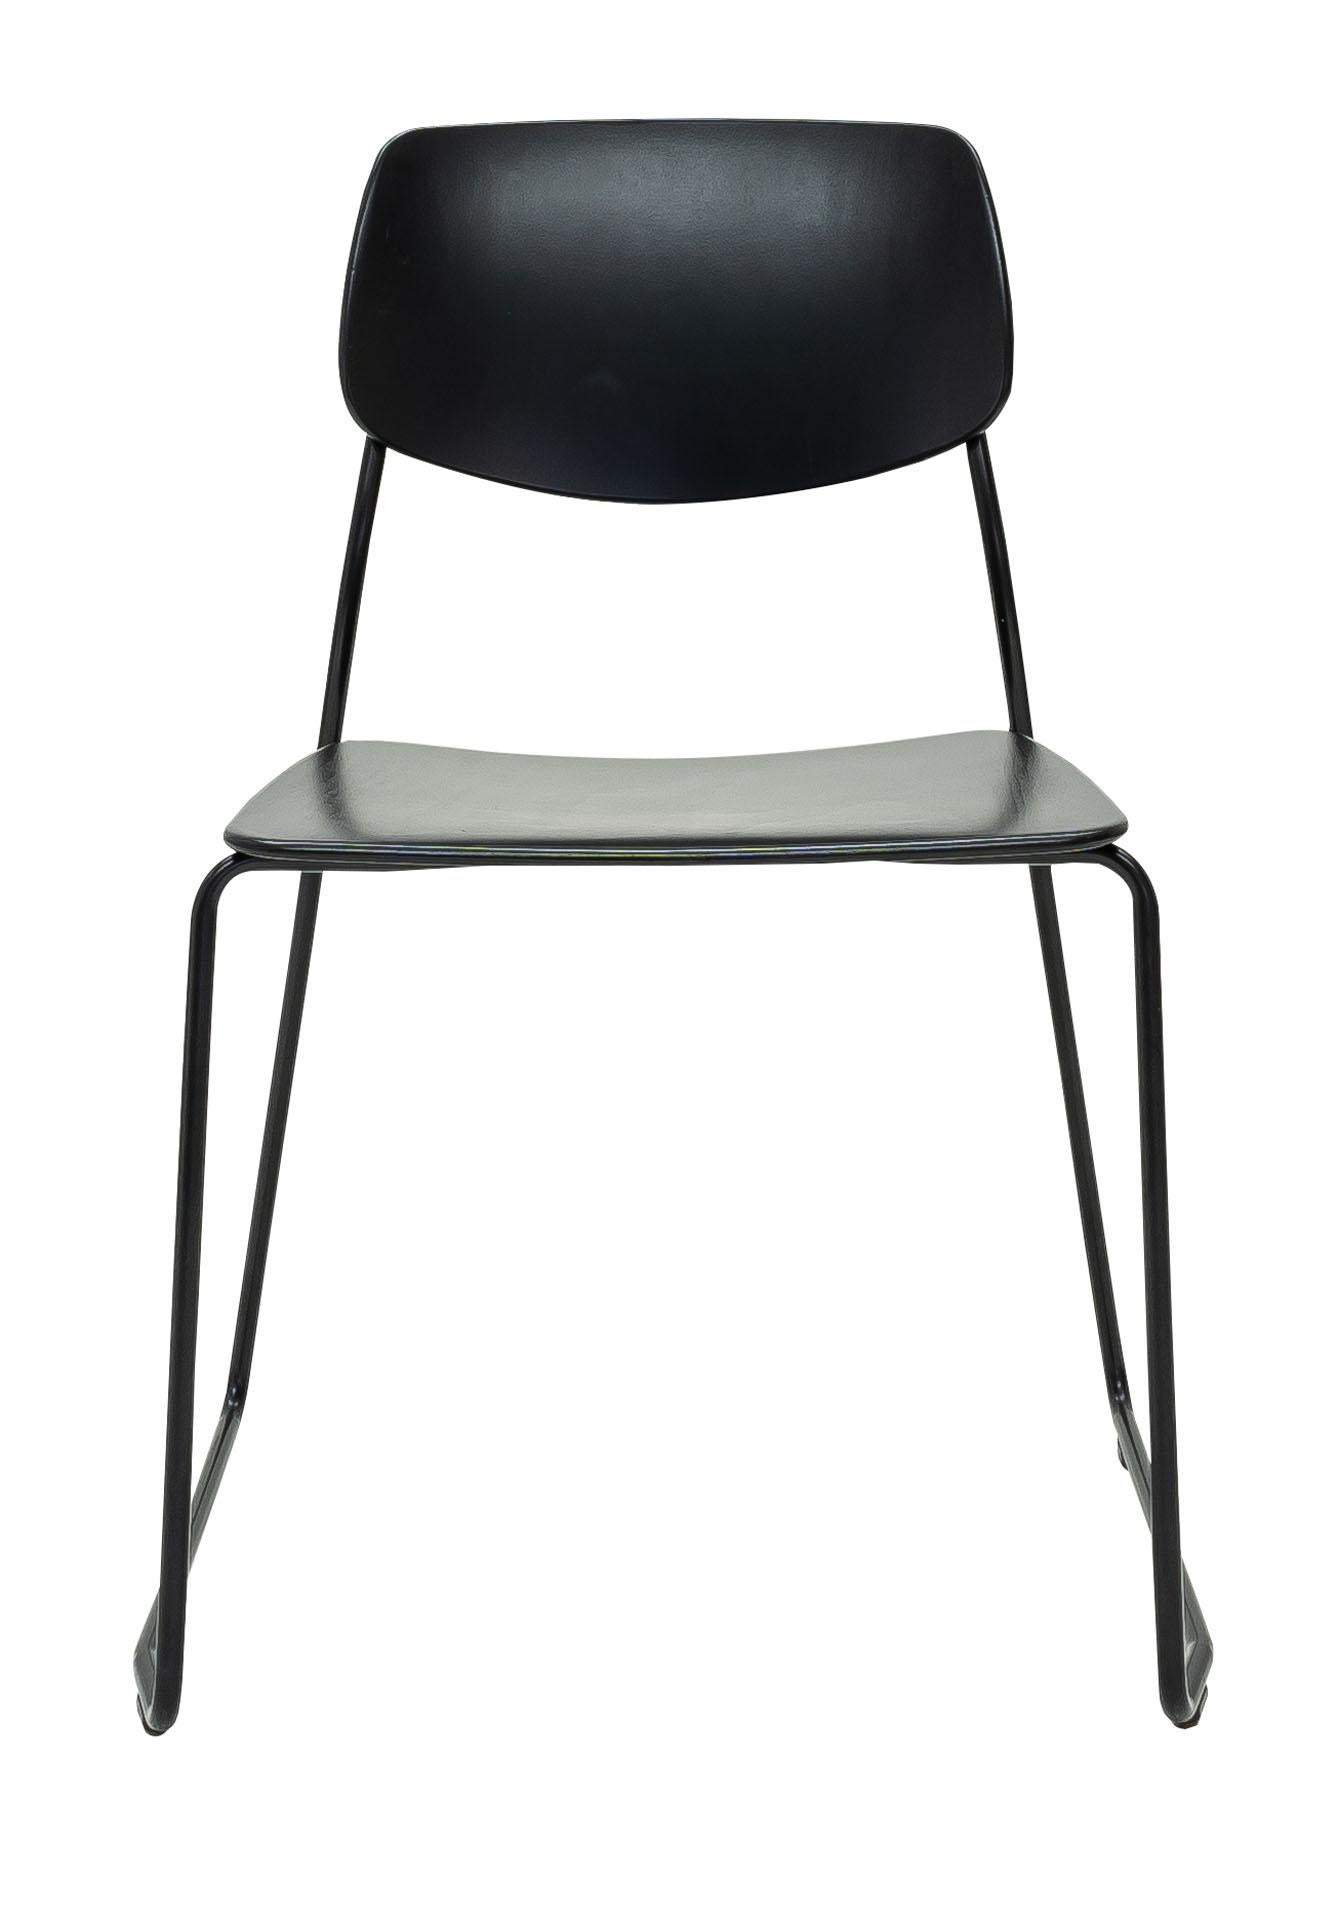 Le Felber C14 est une réédition d'une chaise Classic Dietiker des années 1940. La chaise, qui a d'abord été conçue comme une simple chaise en bois au début des années 40, a été repensée pour devenir un programme modulaire breveté.

Le concept